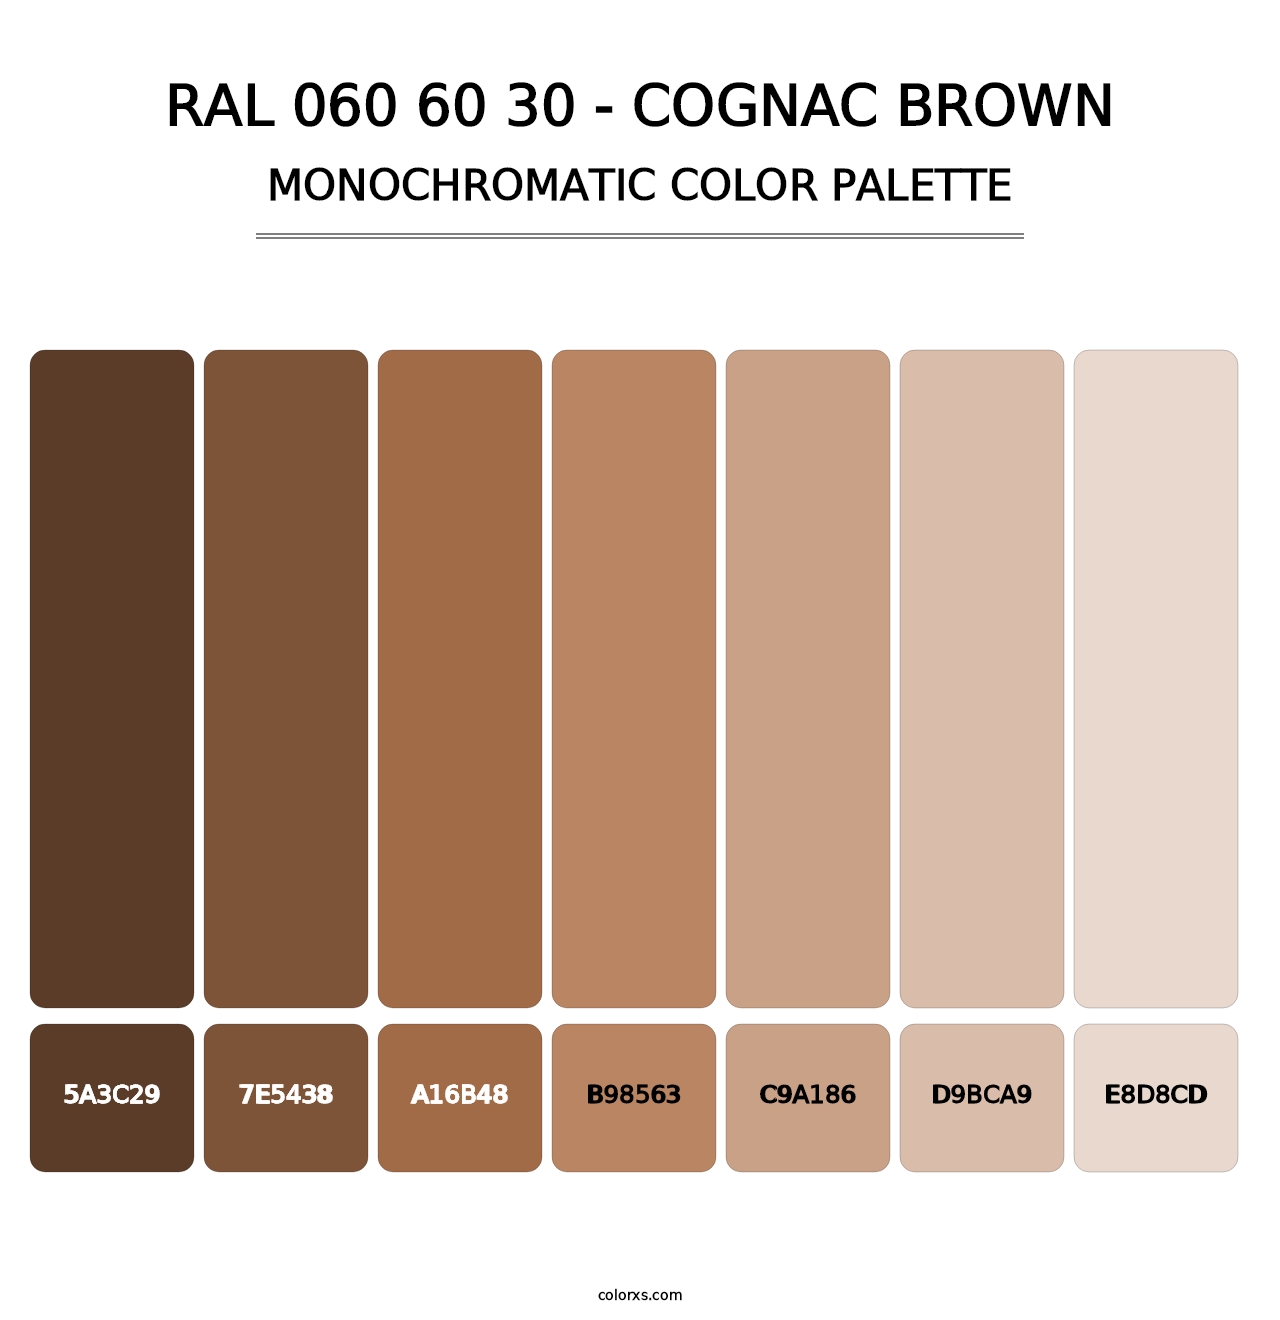 RAL 060 60 30 - Cognac Brown - Monochromatic Color Palette